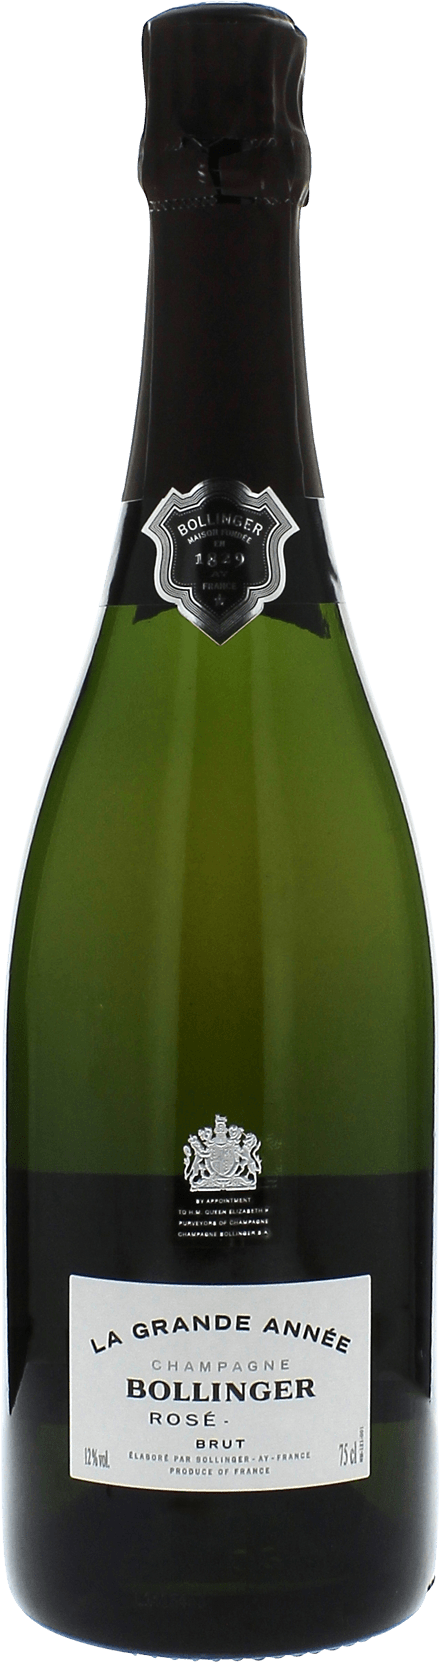 Bollinger grande anne ros en coffret 2012  Bollinger, Champagne